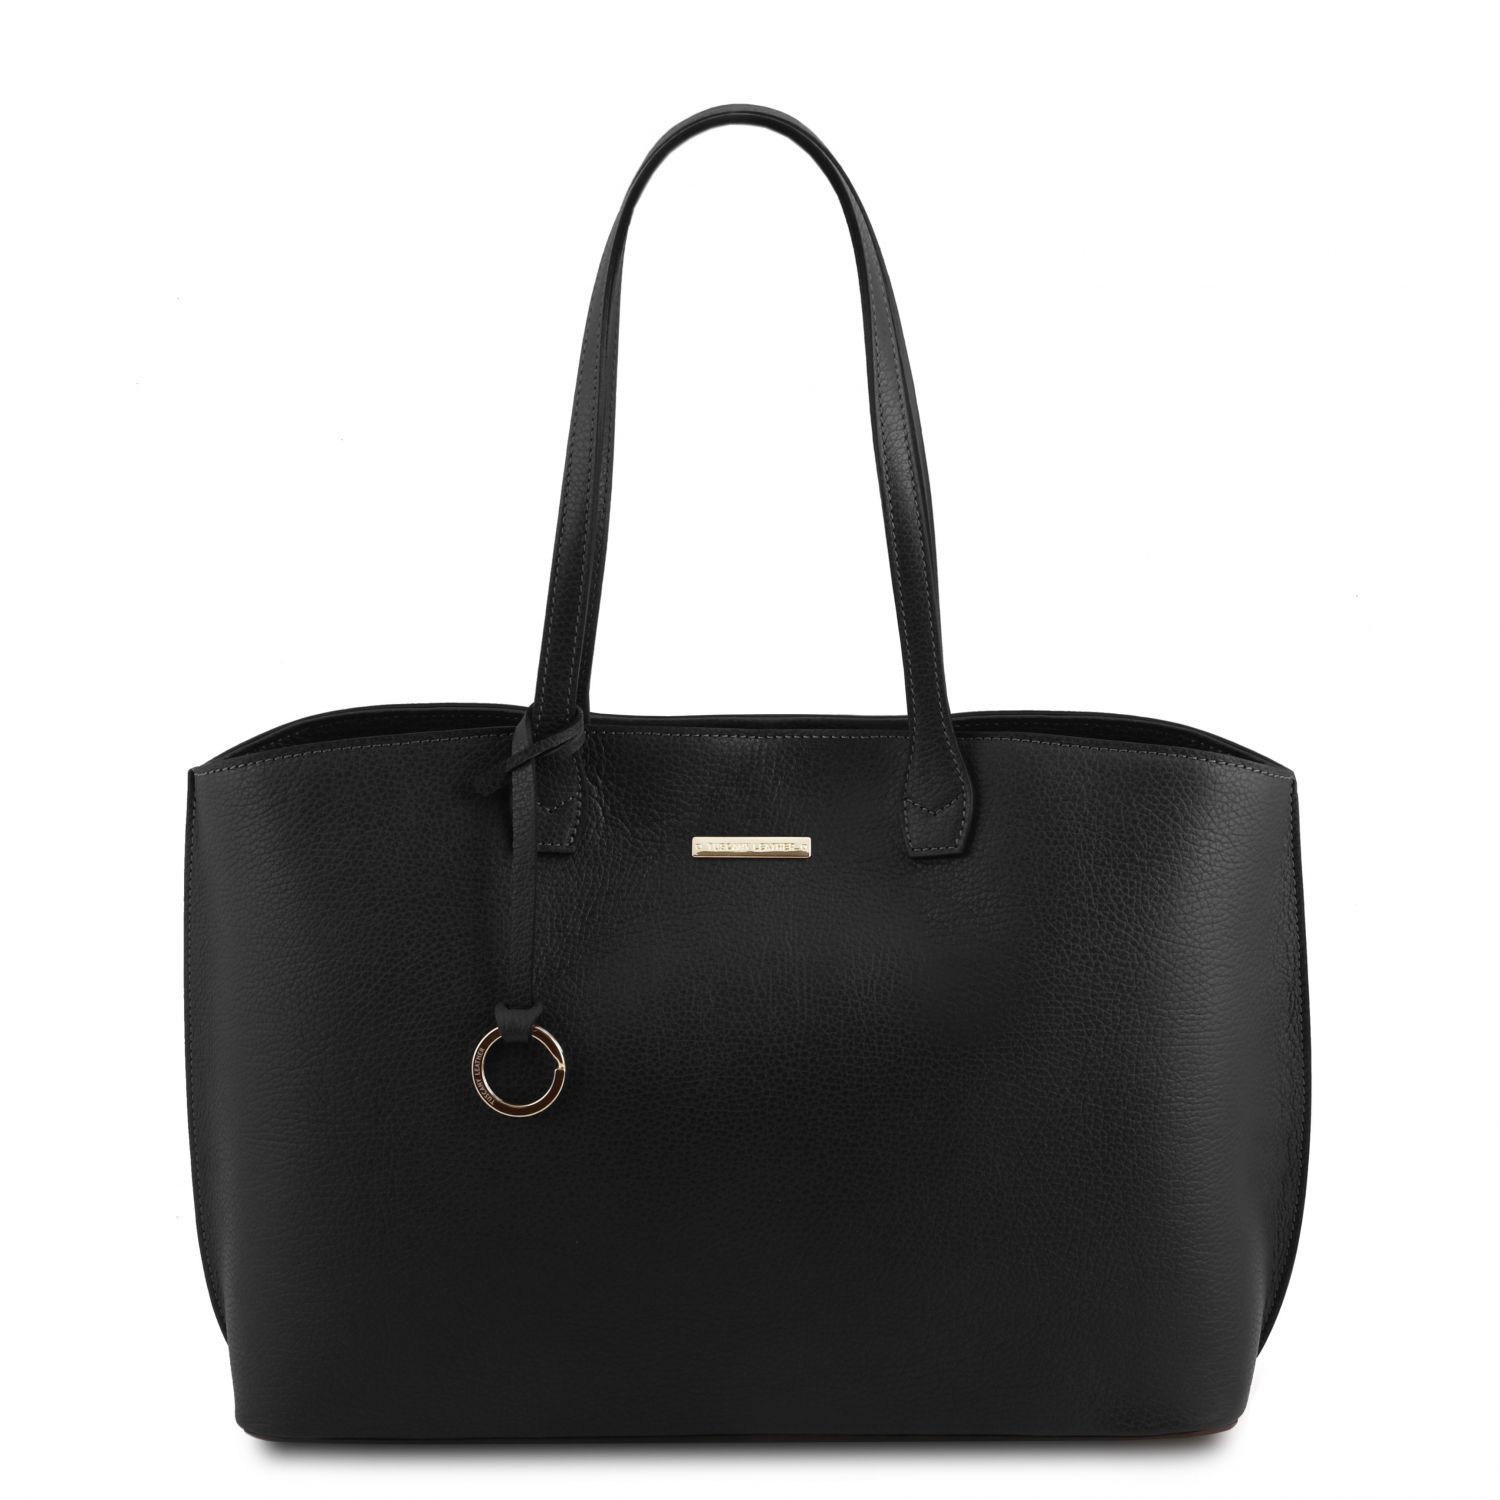 TL Bag - Sac shopping en cuir - Noir (TL141828)